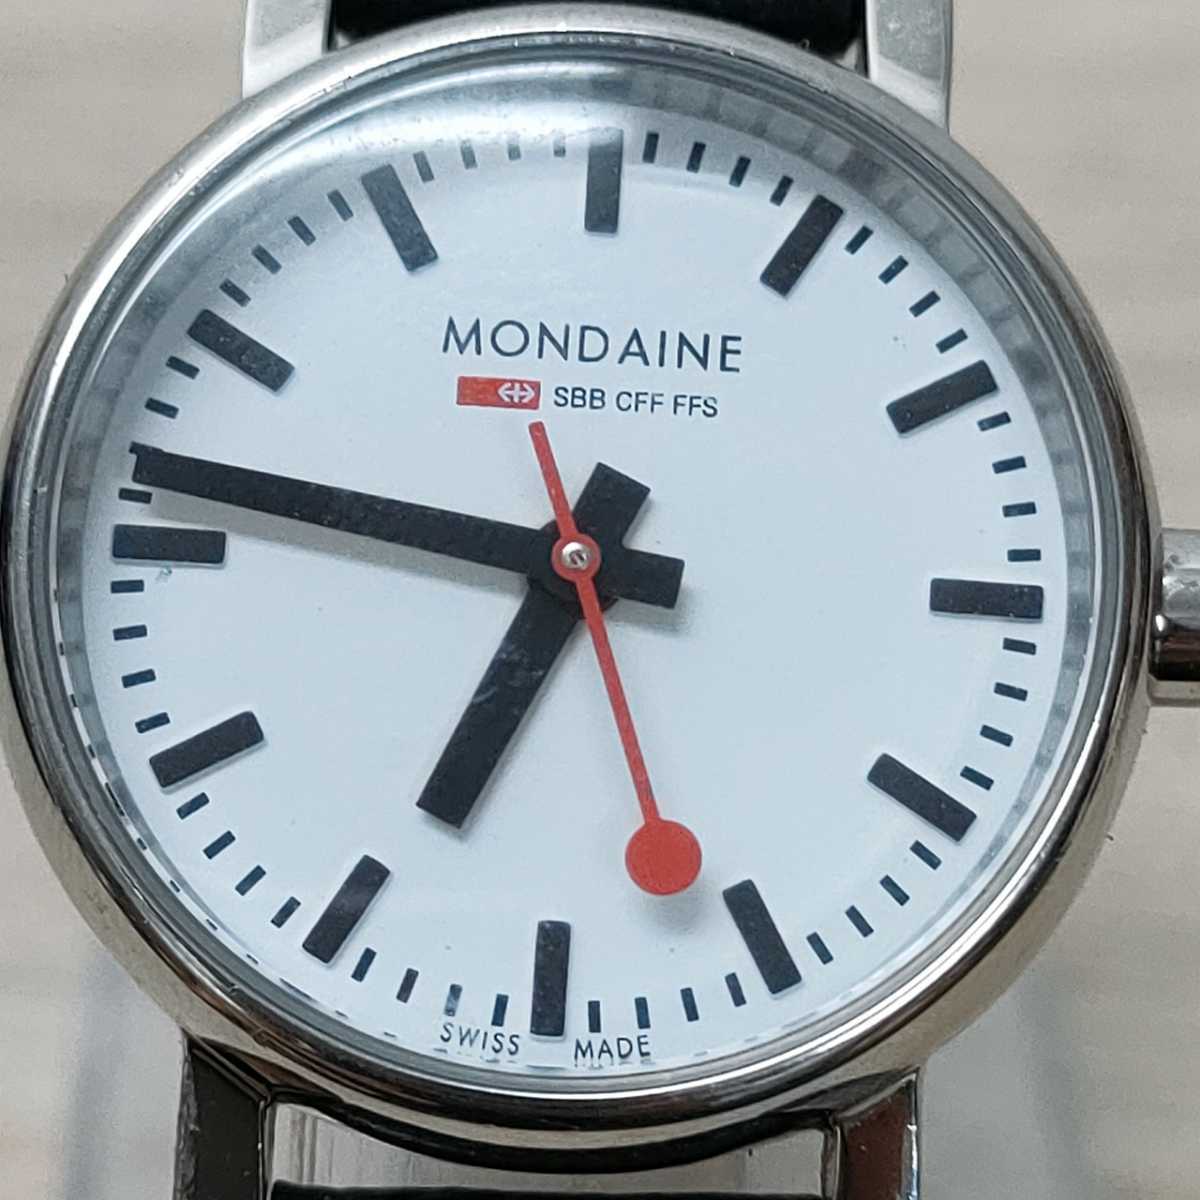 ニクソン モンディーン Mondaine 腕時計 レディース A658 11sbb リコメン堂 通販 Paypayモール ルながらど Shineray Com Br